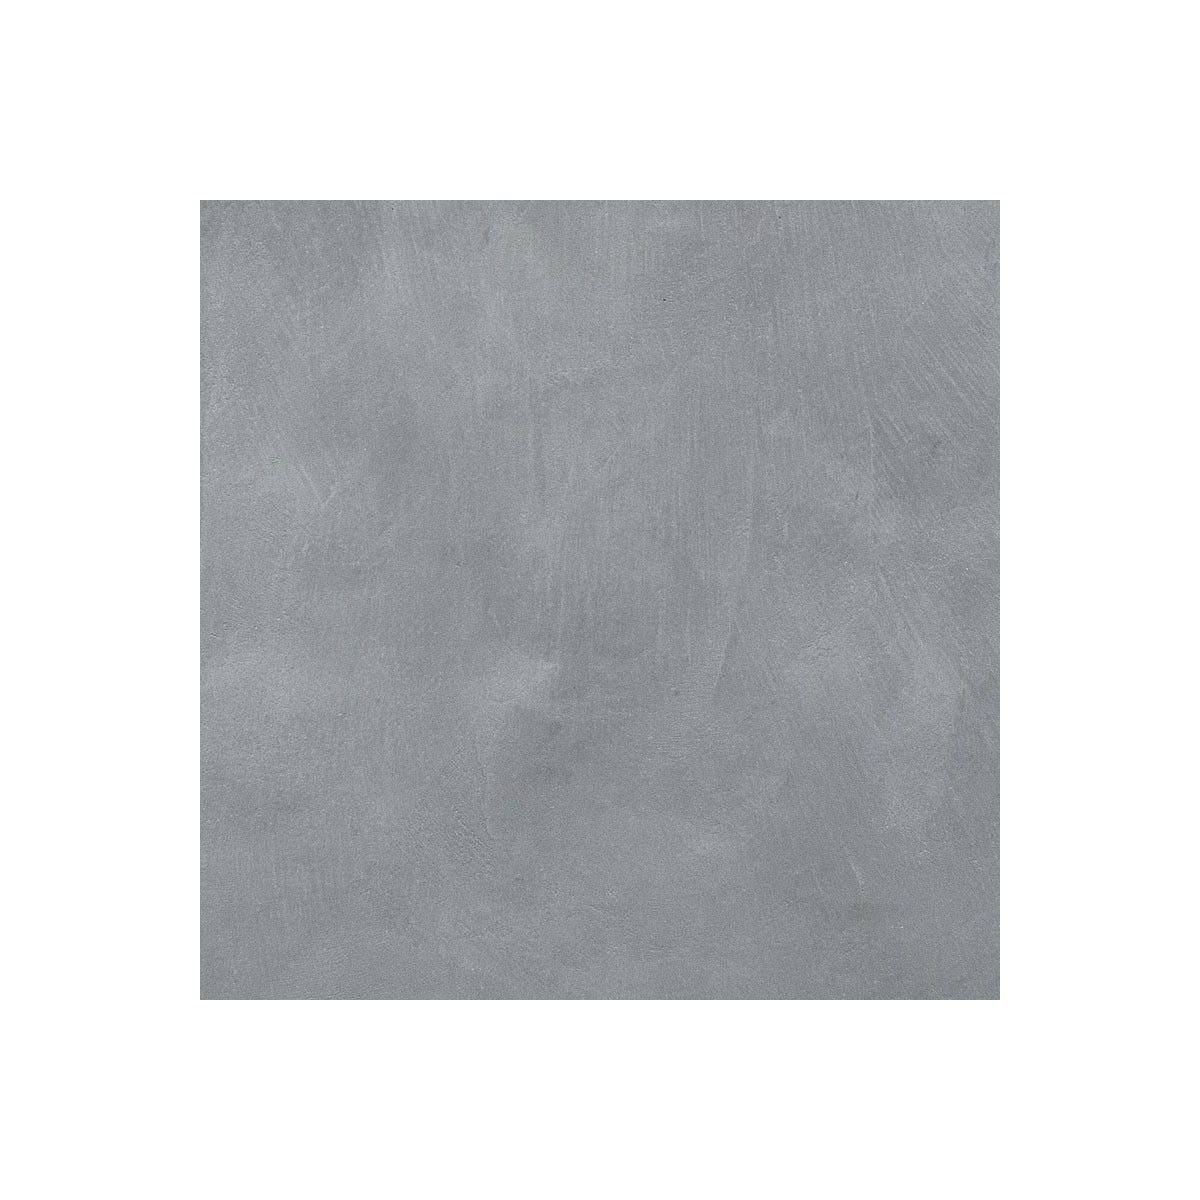 Béton Ciré Sol en - Primaire et vernis de finition inclus - 2 m² (en 2 couches) - Chartreux - Gris - ARCANE INDUSTRIES 1